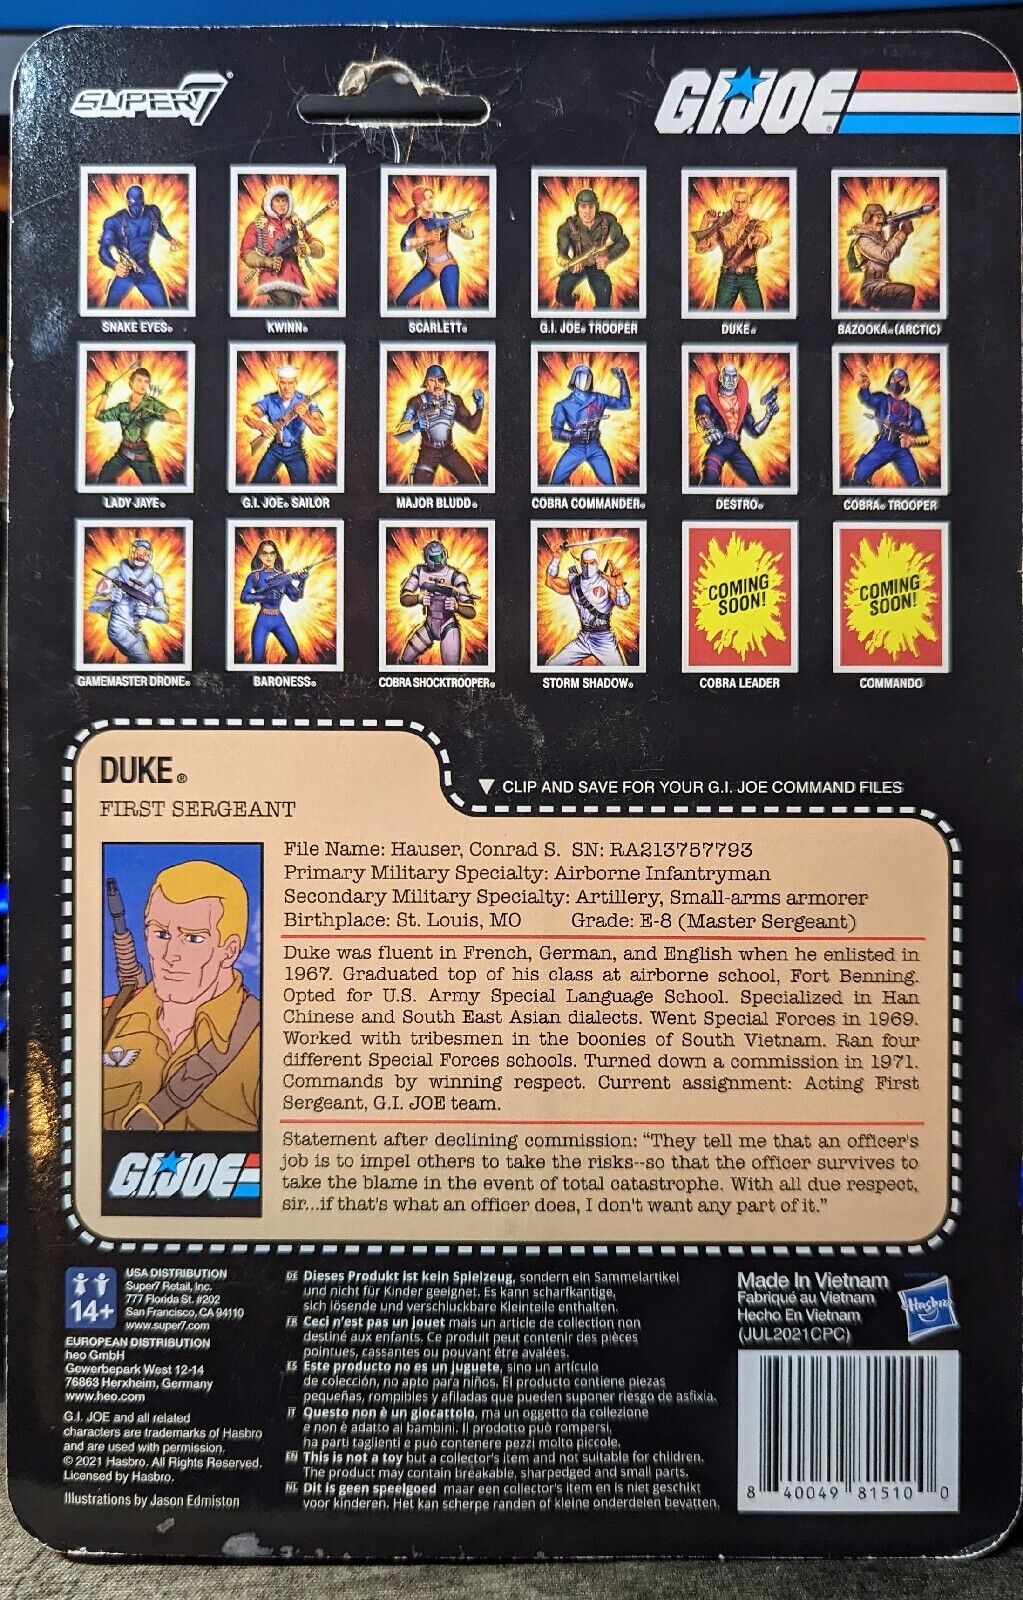 Duke G.I. Joe Super 7 Reaction Action Figure